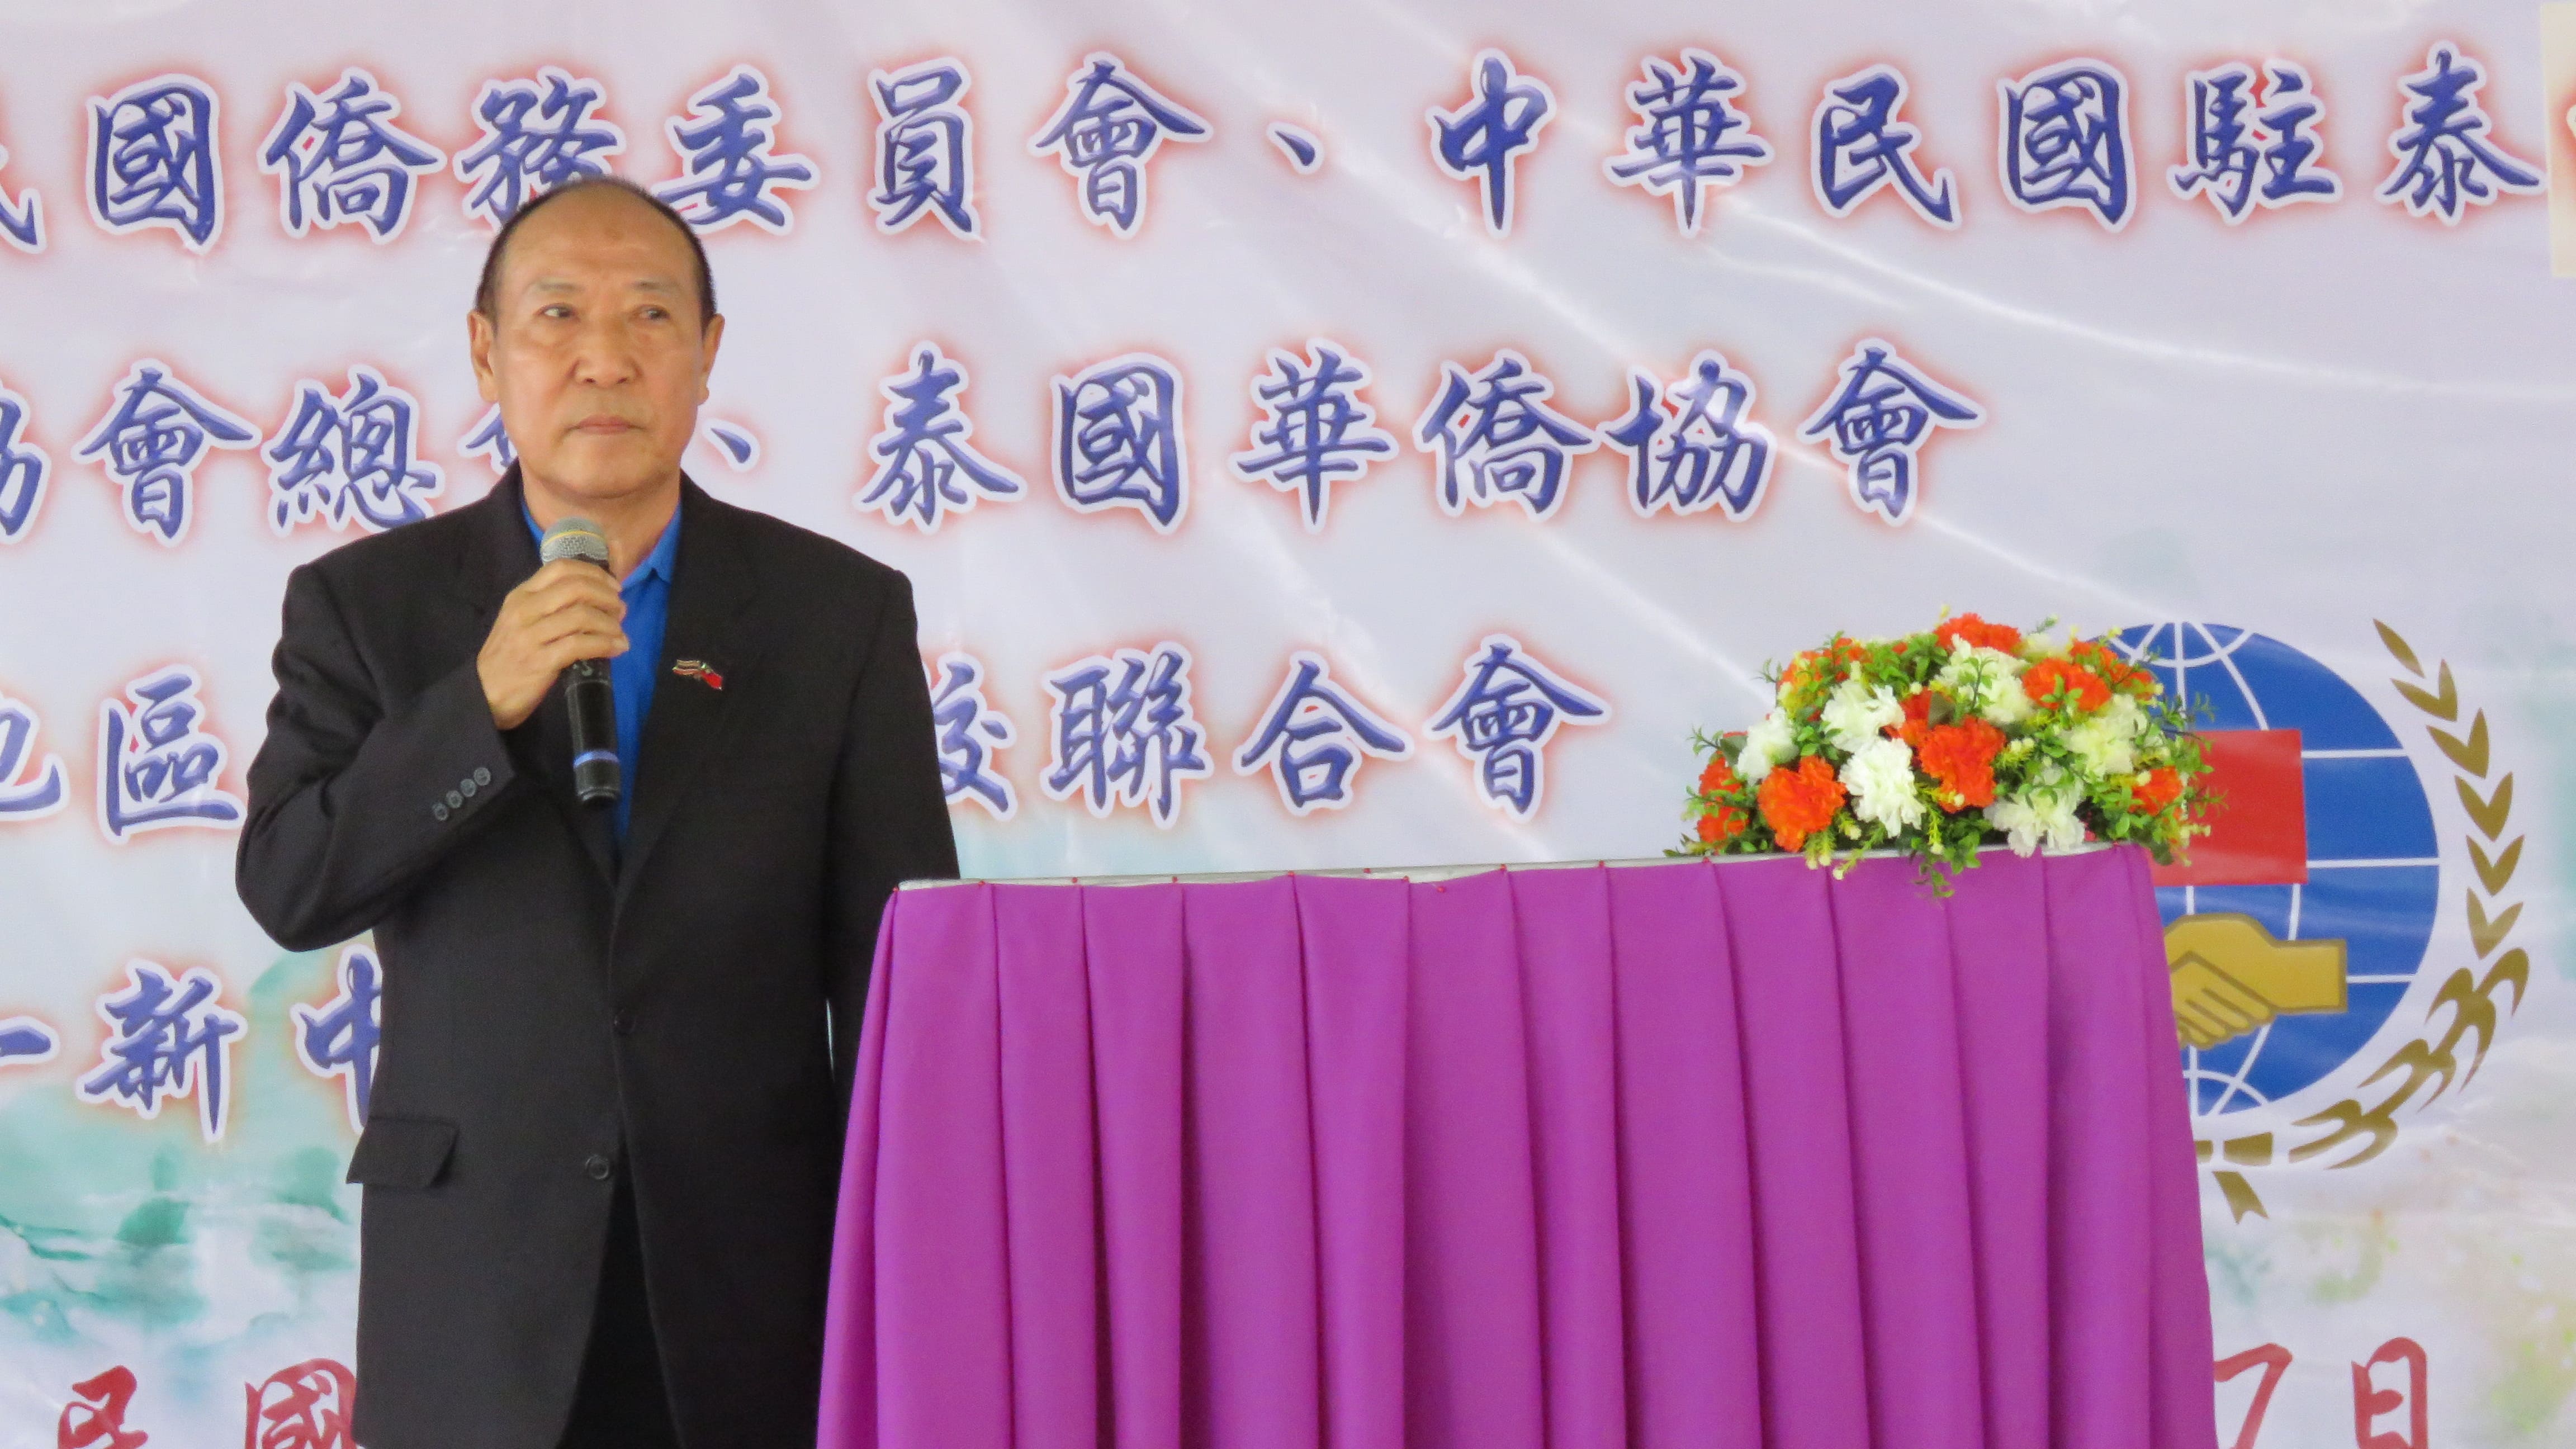 大會主席 - 清邁地區華文學校聯合會會長 王世璽 先生致歡迎詞